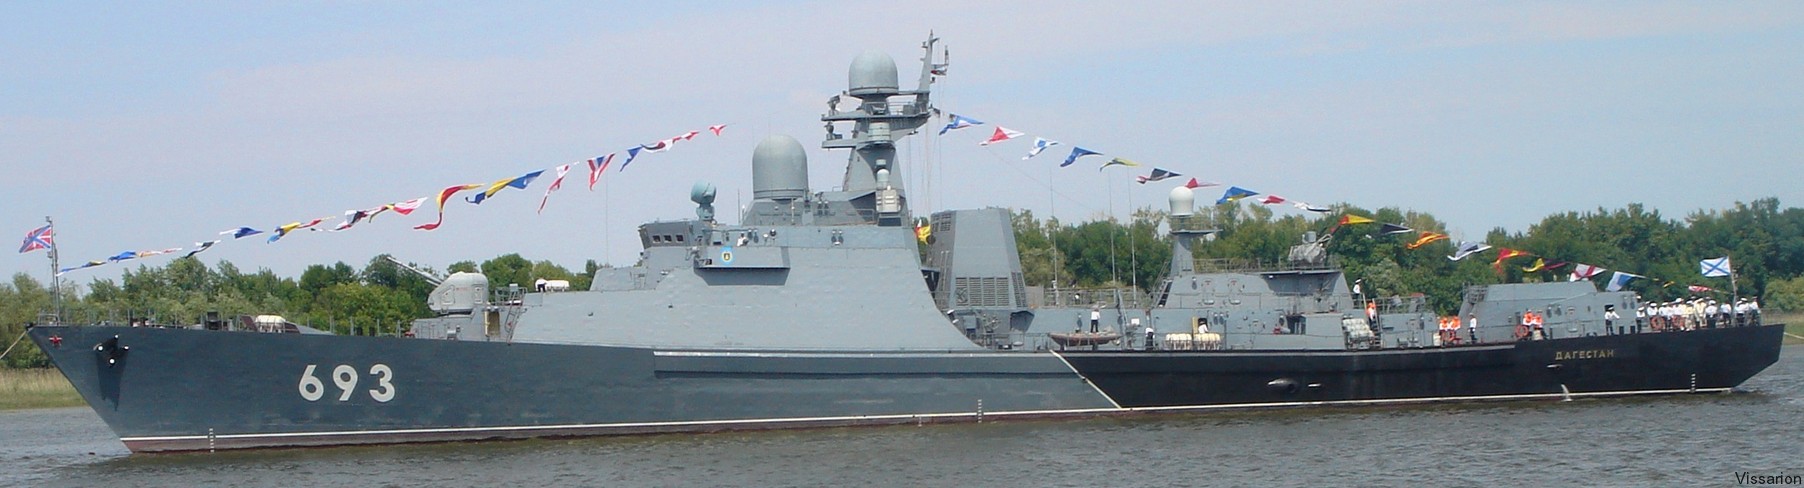 gepard class project 11661 frigate russian navy